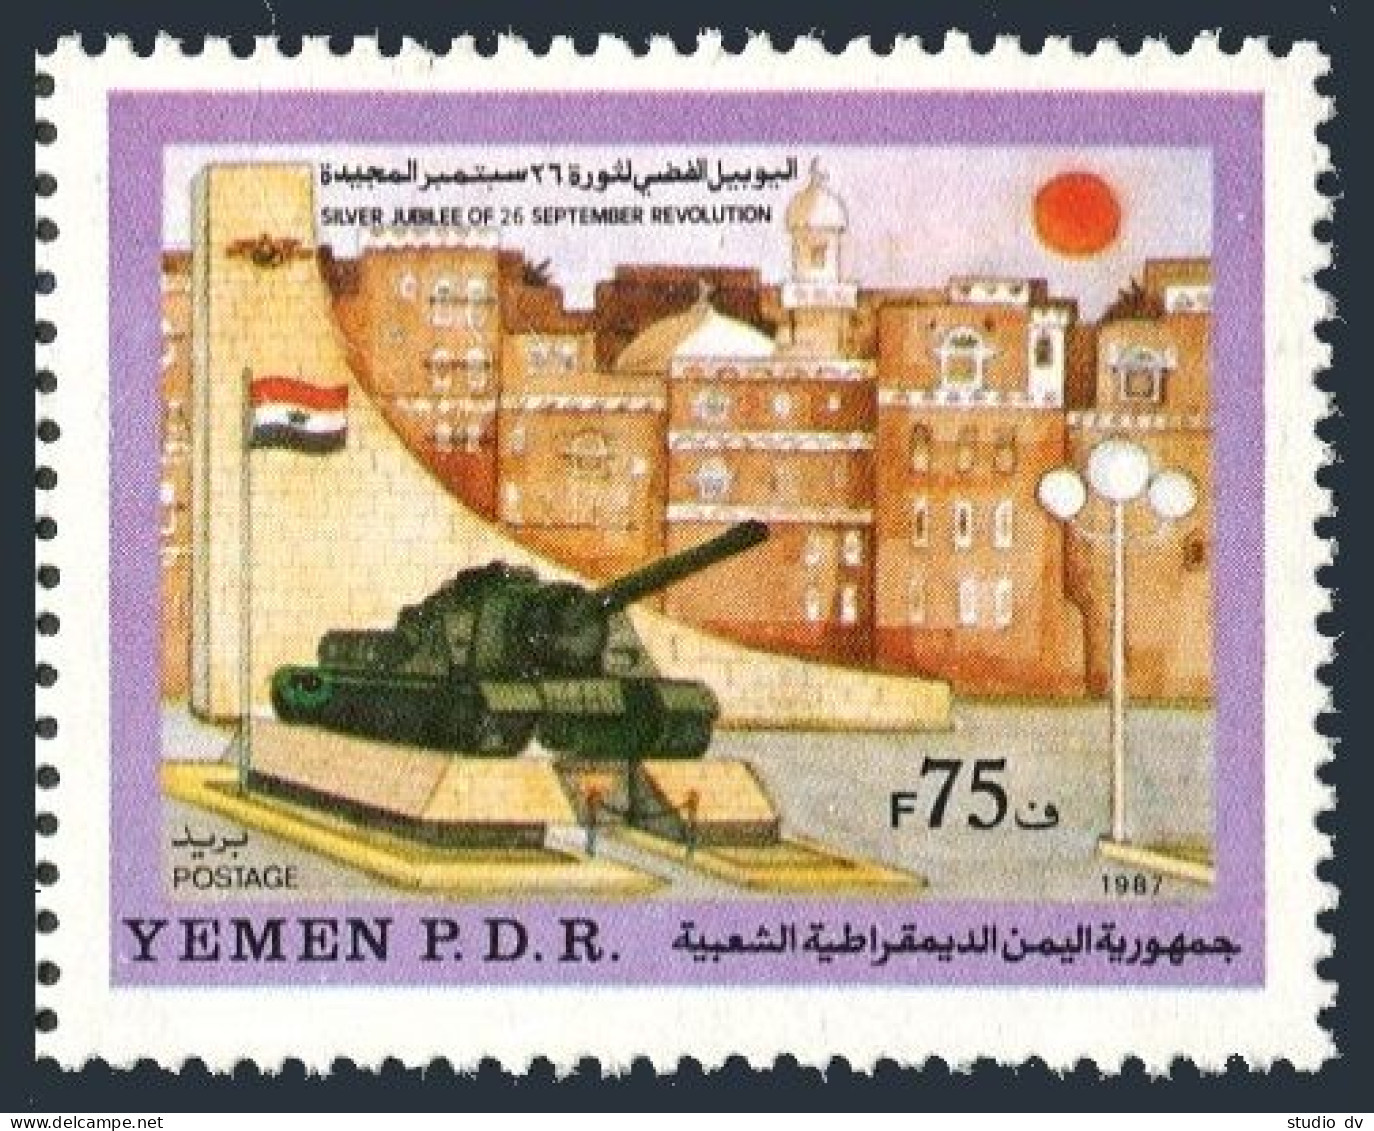 Yemen PDR  395, MNH. Mi 426. September 26 Revolution, 25, 1988. Monument Tank. - Jemen